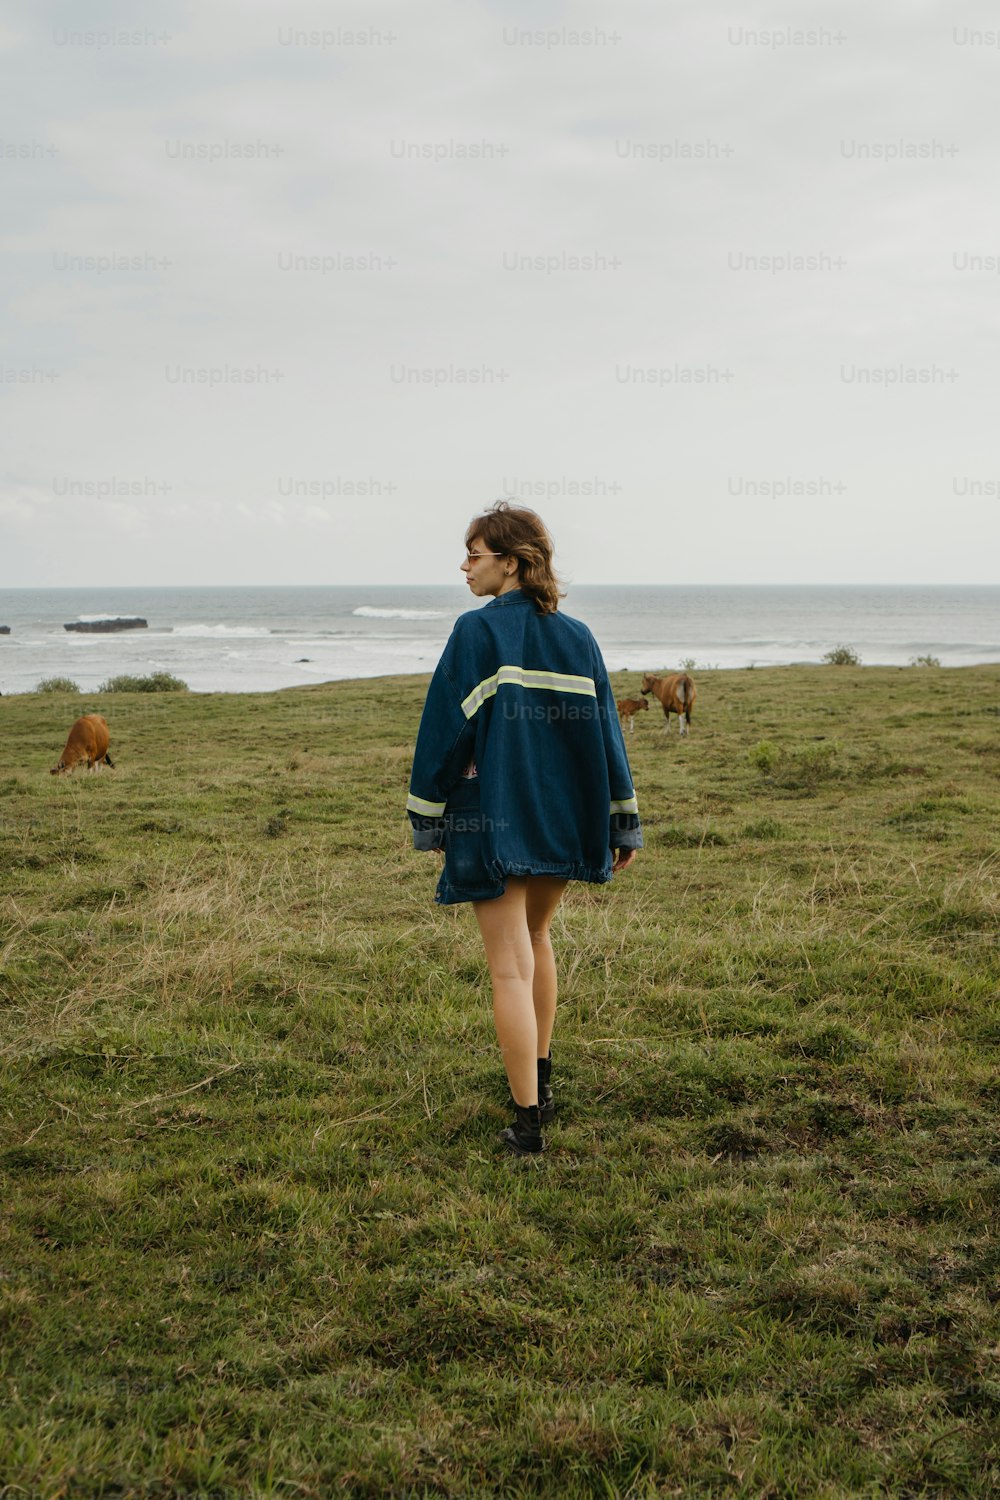 a woman in a blue dress walking across a field